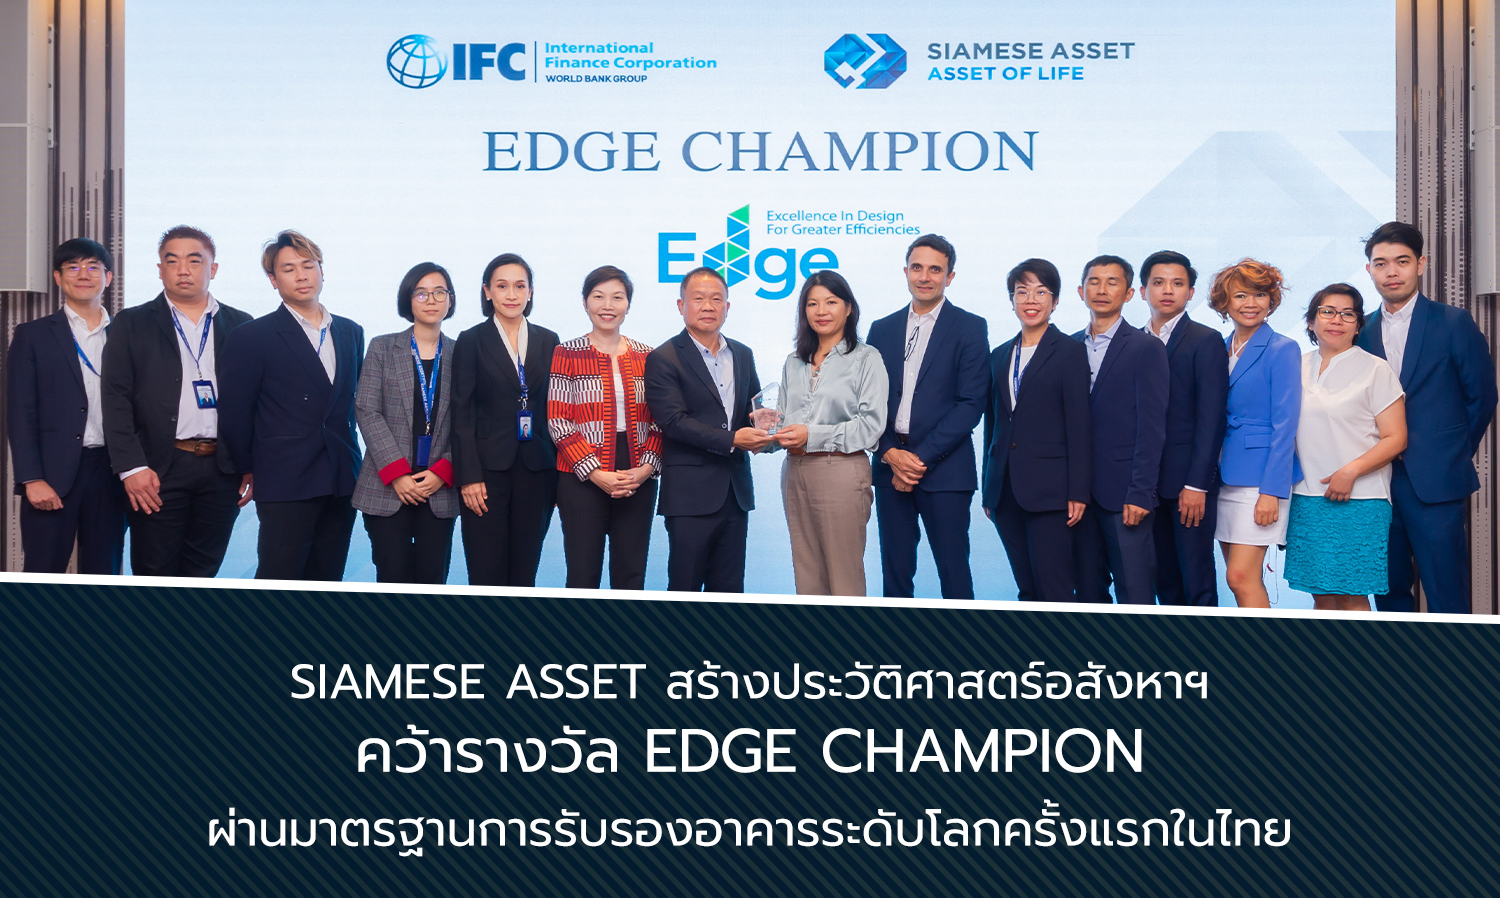 Siamese Asset สร้างประวัติศาสตร์อสังหาฯ คว้ารางวัล EDGE Champion ผ่านมาตรฐานการรับรองอาคารระดับโลกครั้งแรกในไทย